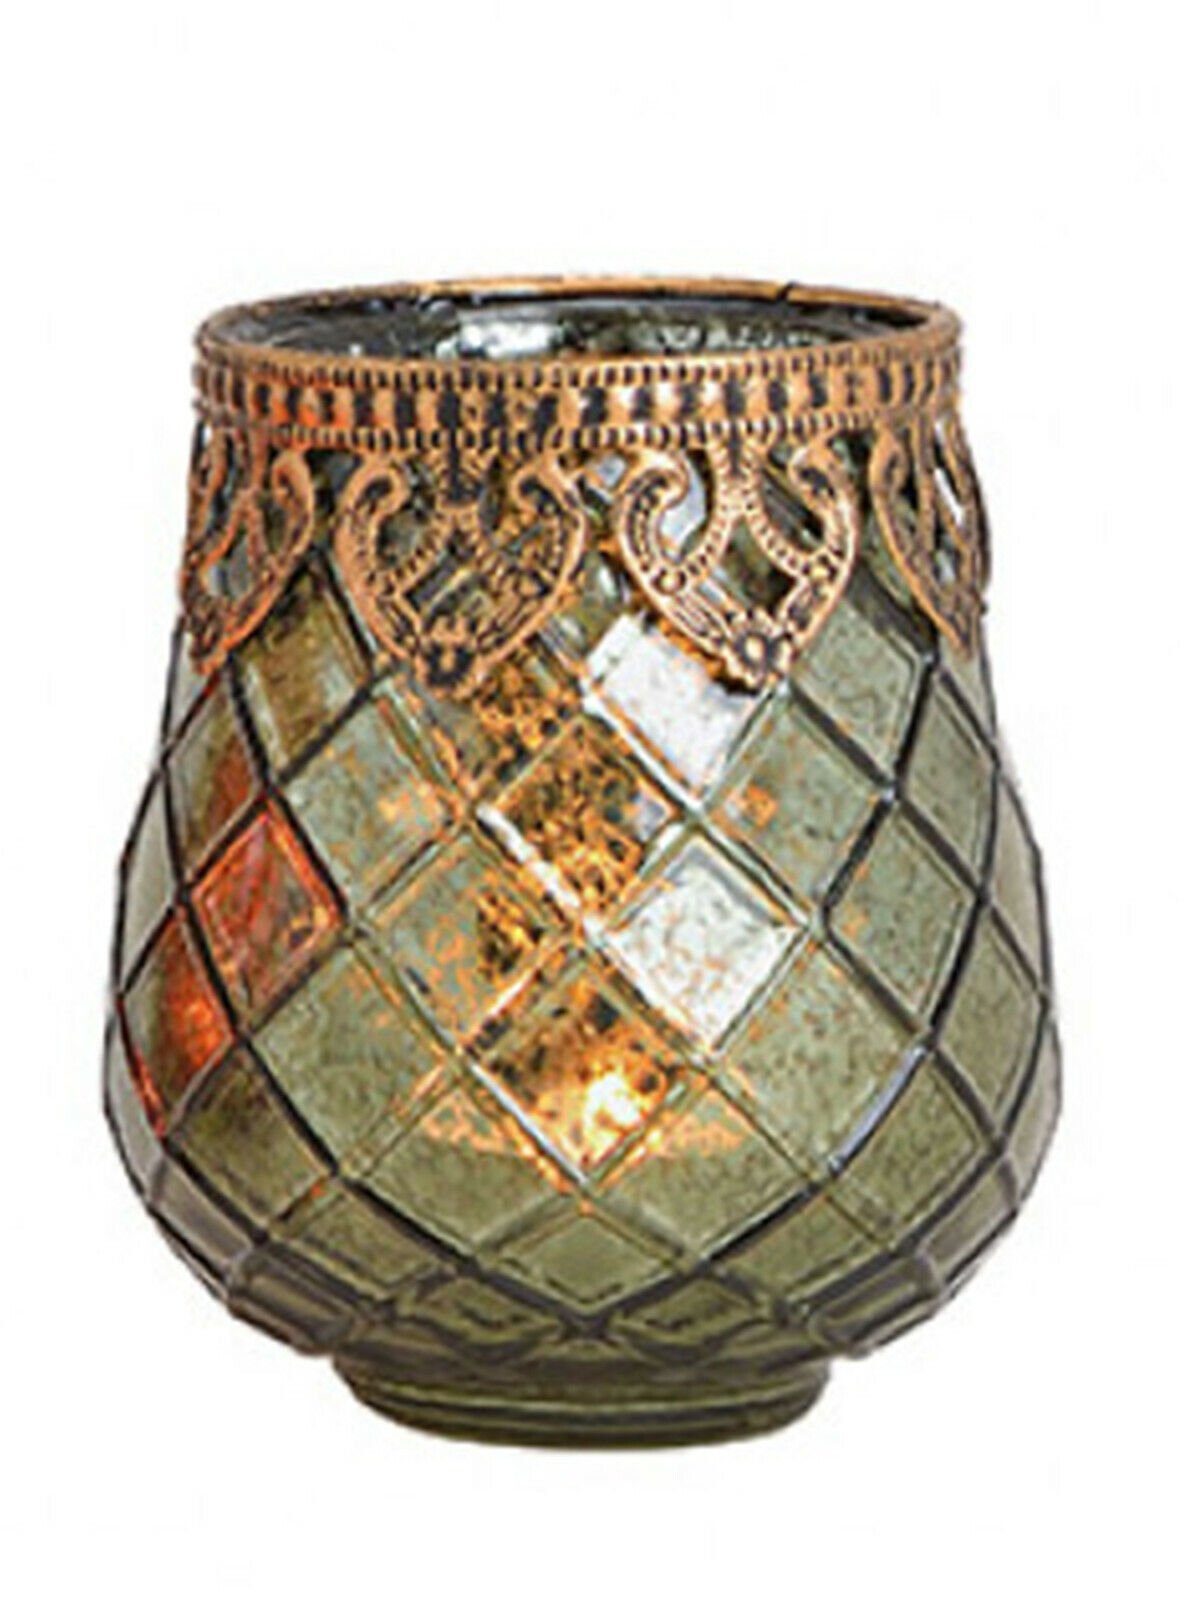 Taschen4life Windlicht Glas Windlicht Indien 602 (3 Stück) (3er Set), orientalische Windlichte, Teelichthalter, Shabby chic & Bohemien Stil 3 Stück grün | Windlichter